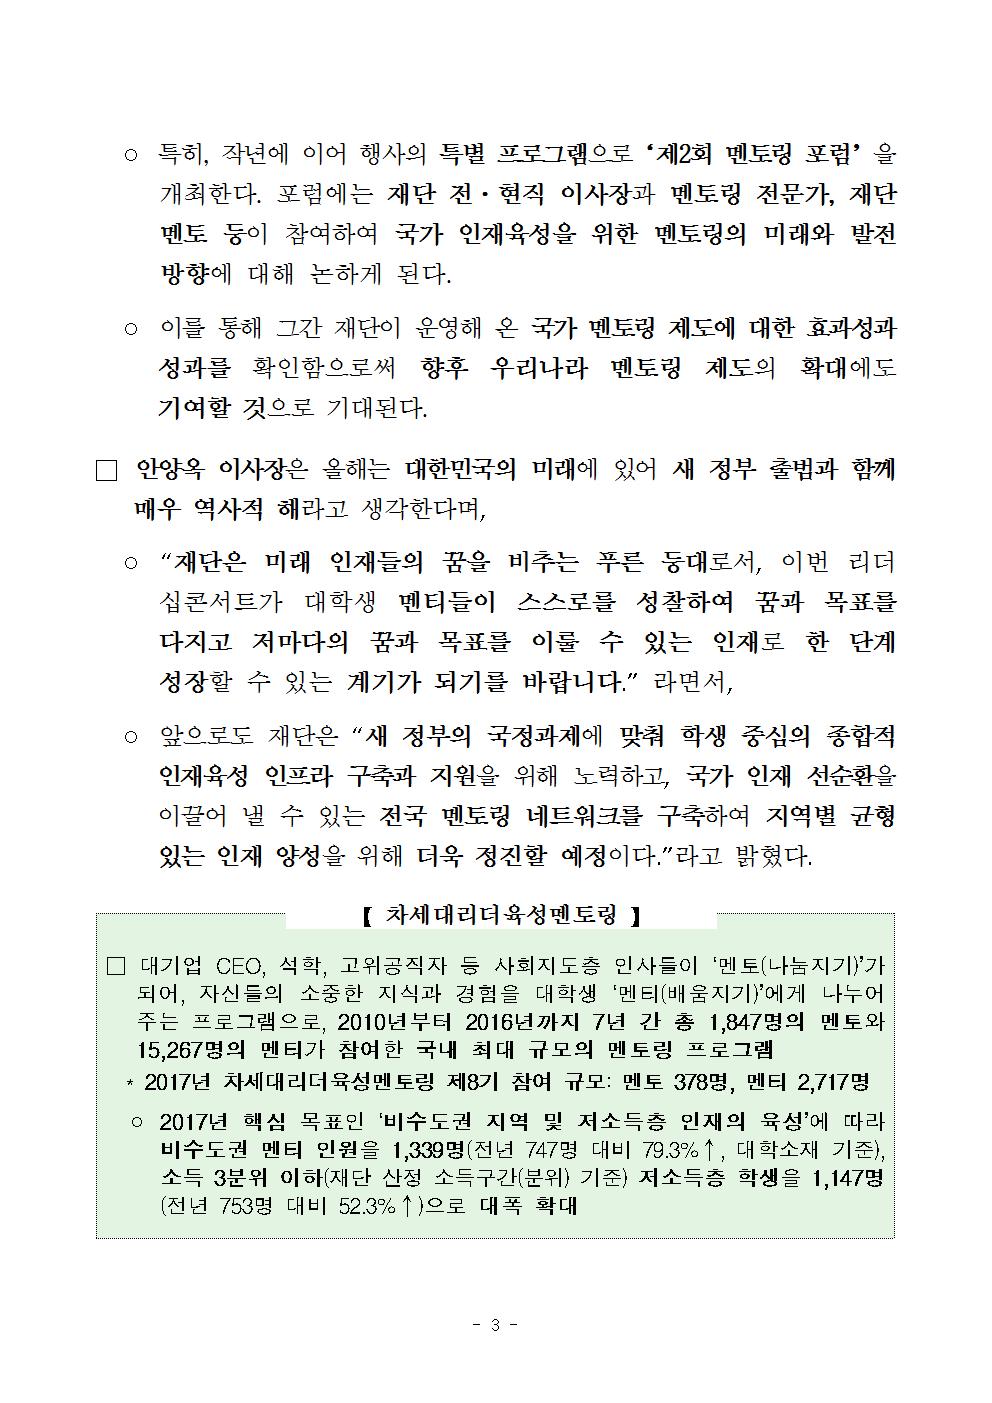 09-23(토)[보도자료] 2017년 차세대리더육성멘토링 리더십콘서트 개최003.jpg